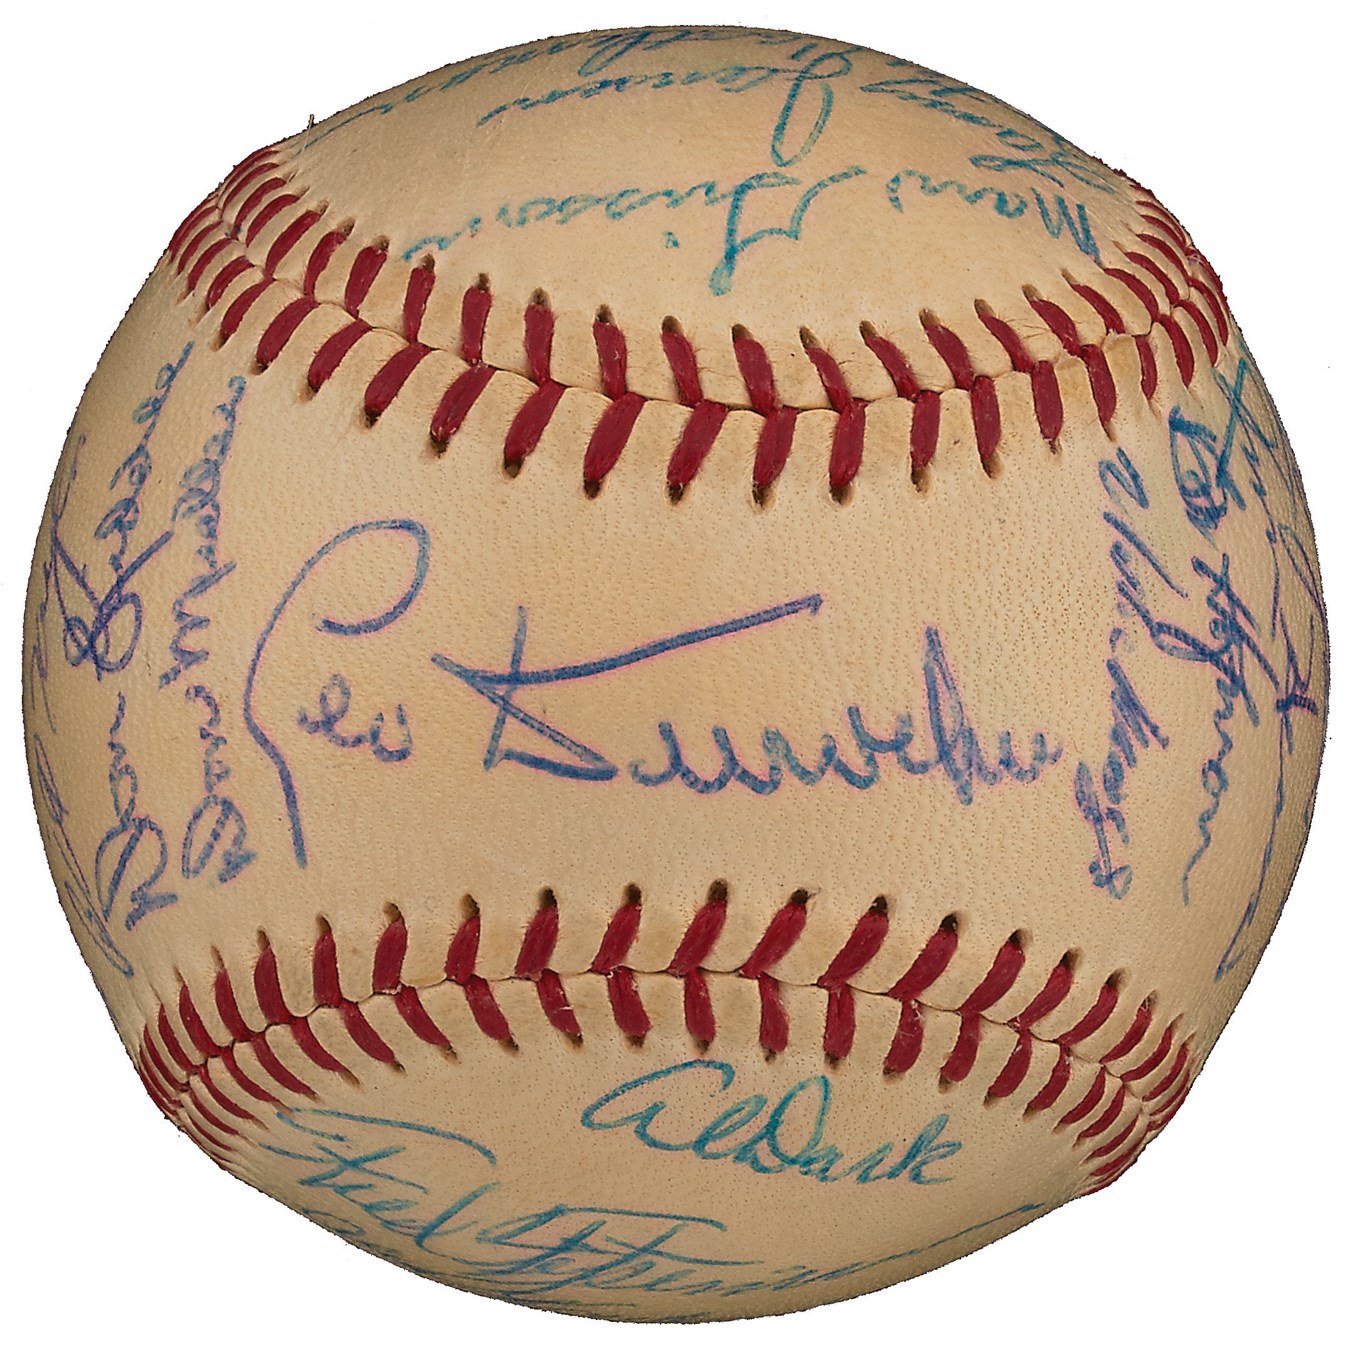 1954 World Champion New York Giants Team-Signed Baseball (PSA 8.5, Highest Graded)